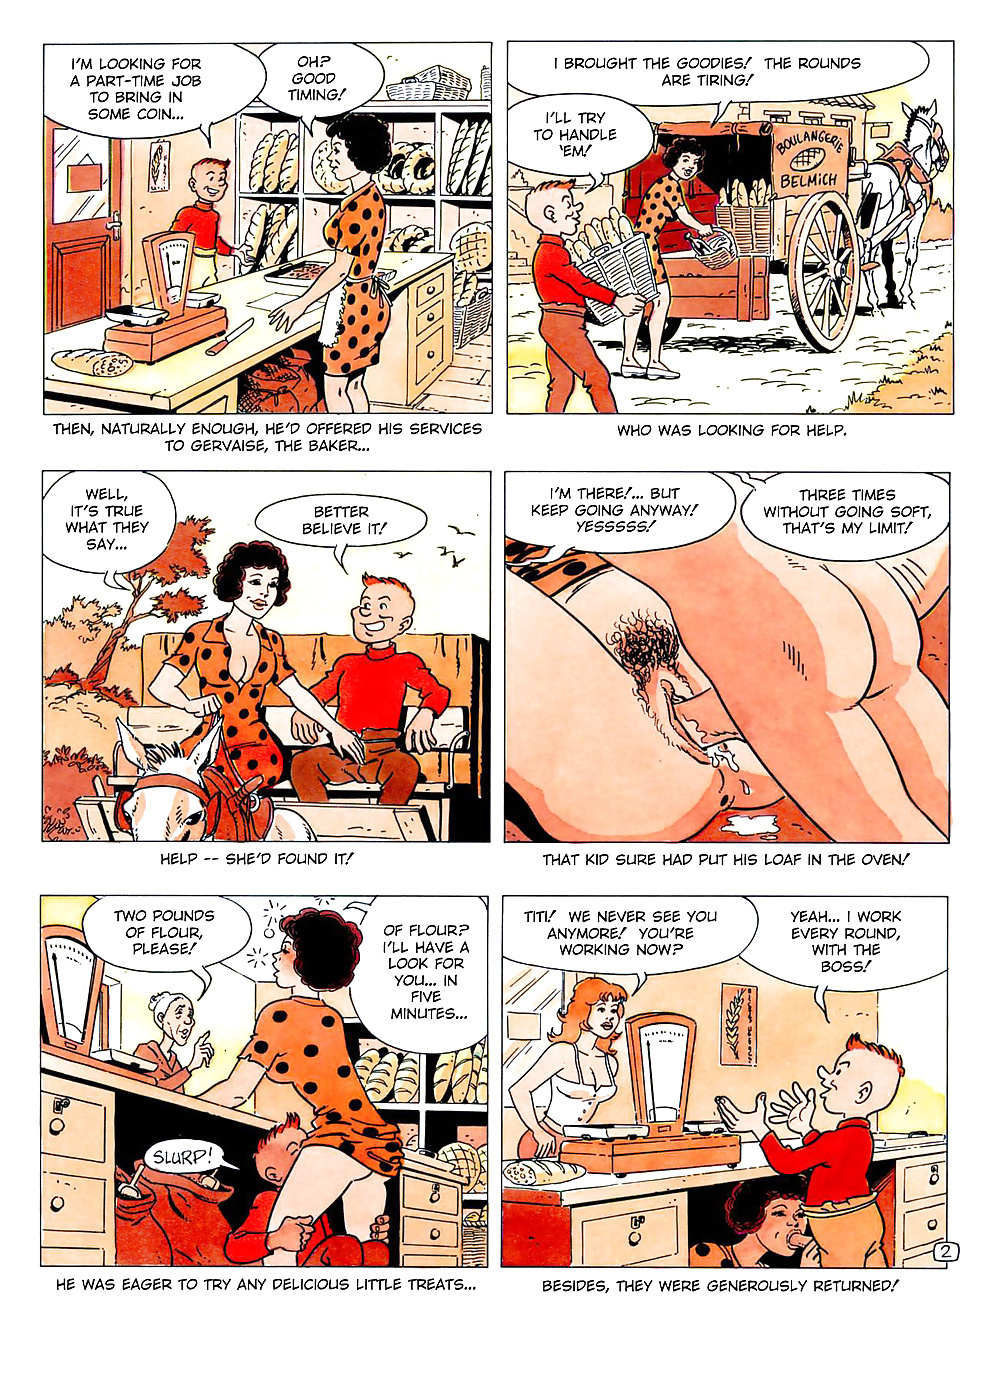 Titi Fricoteur #2 (Lizay, Manuel) - Cartoon